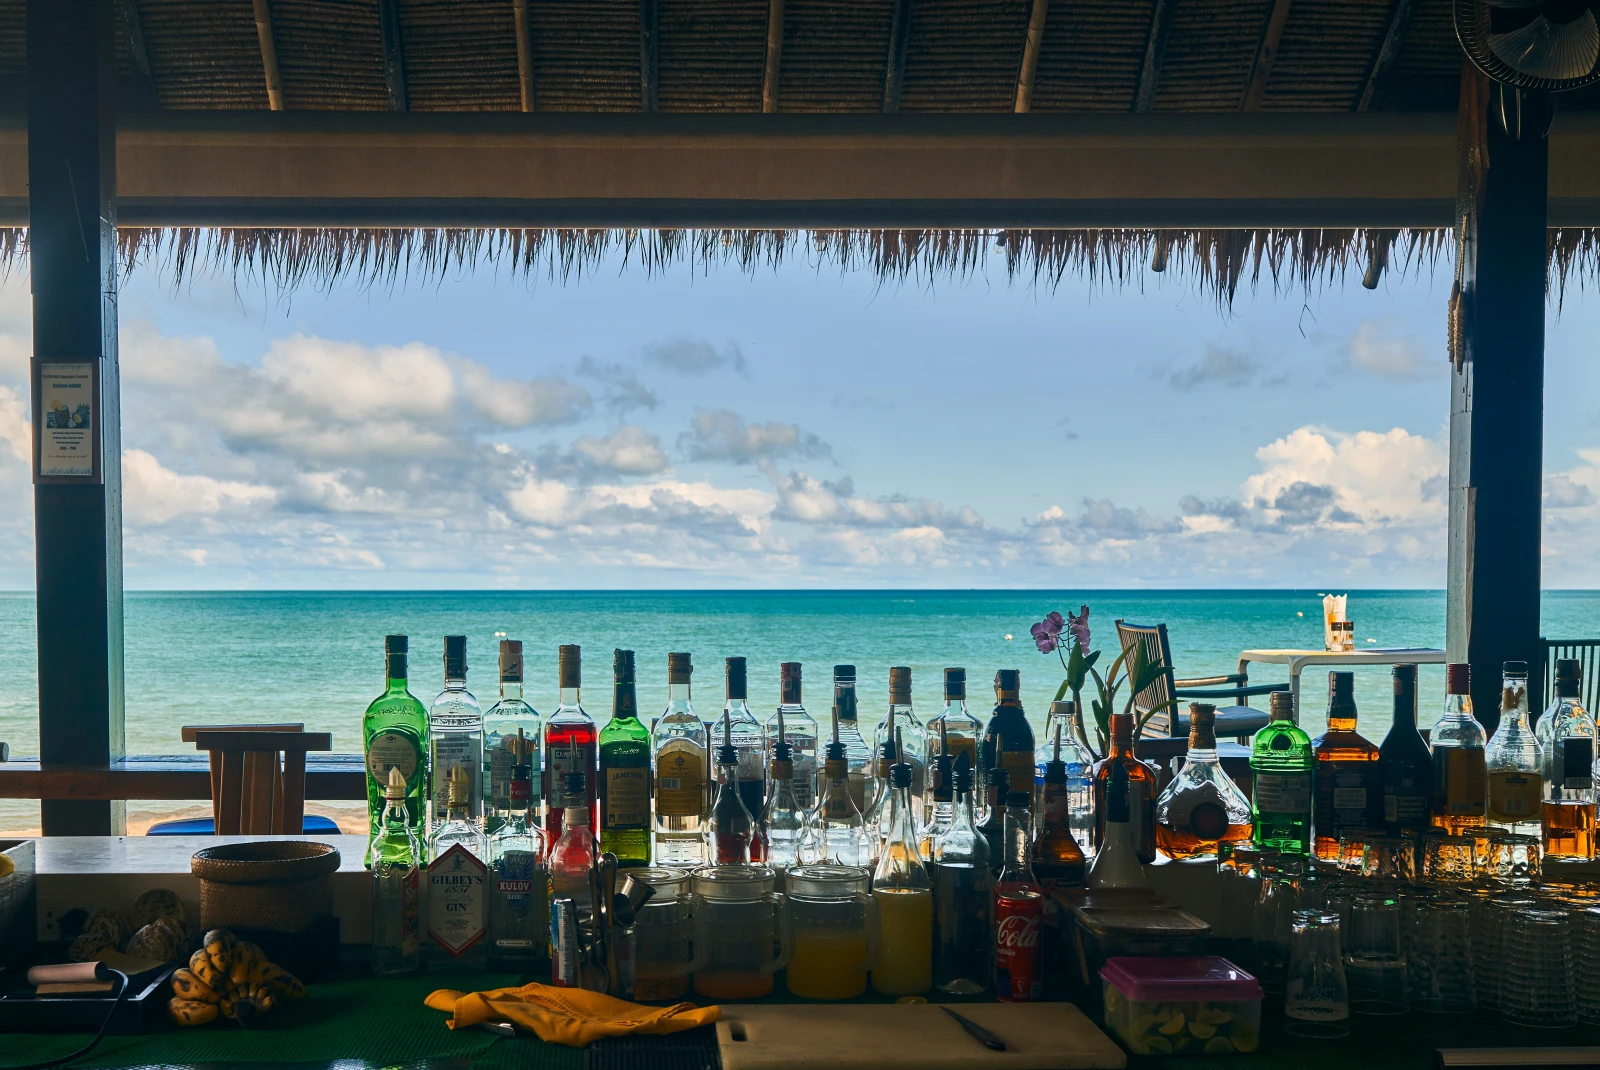 A beach view wine bar.